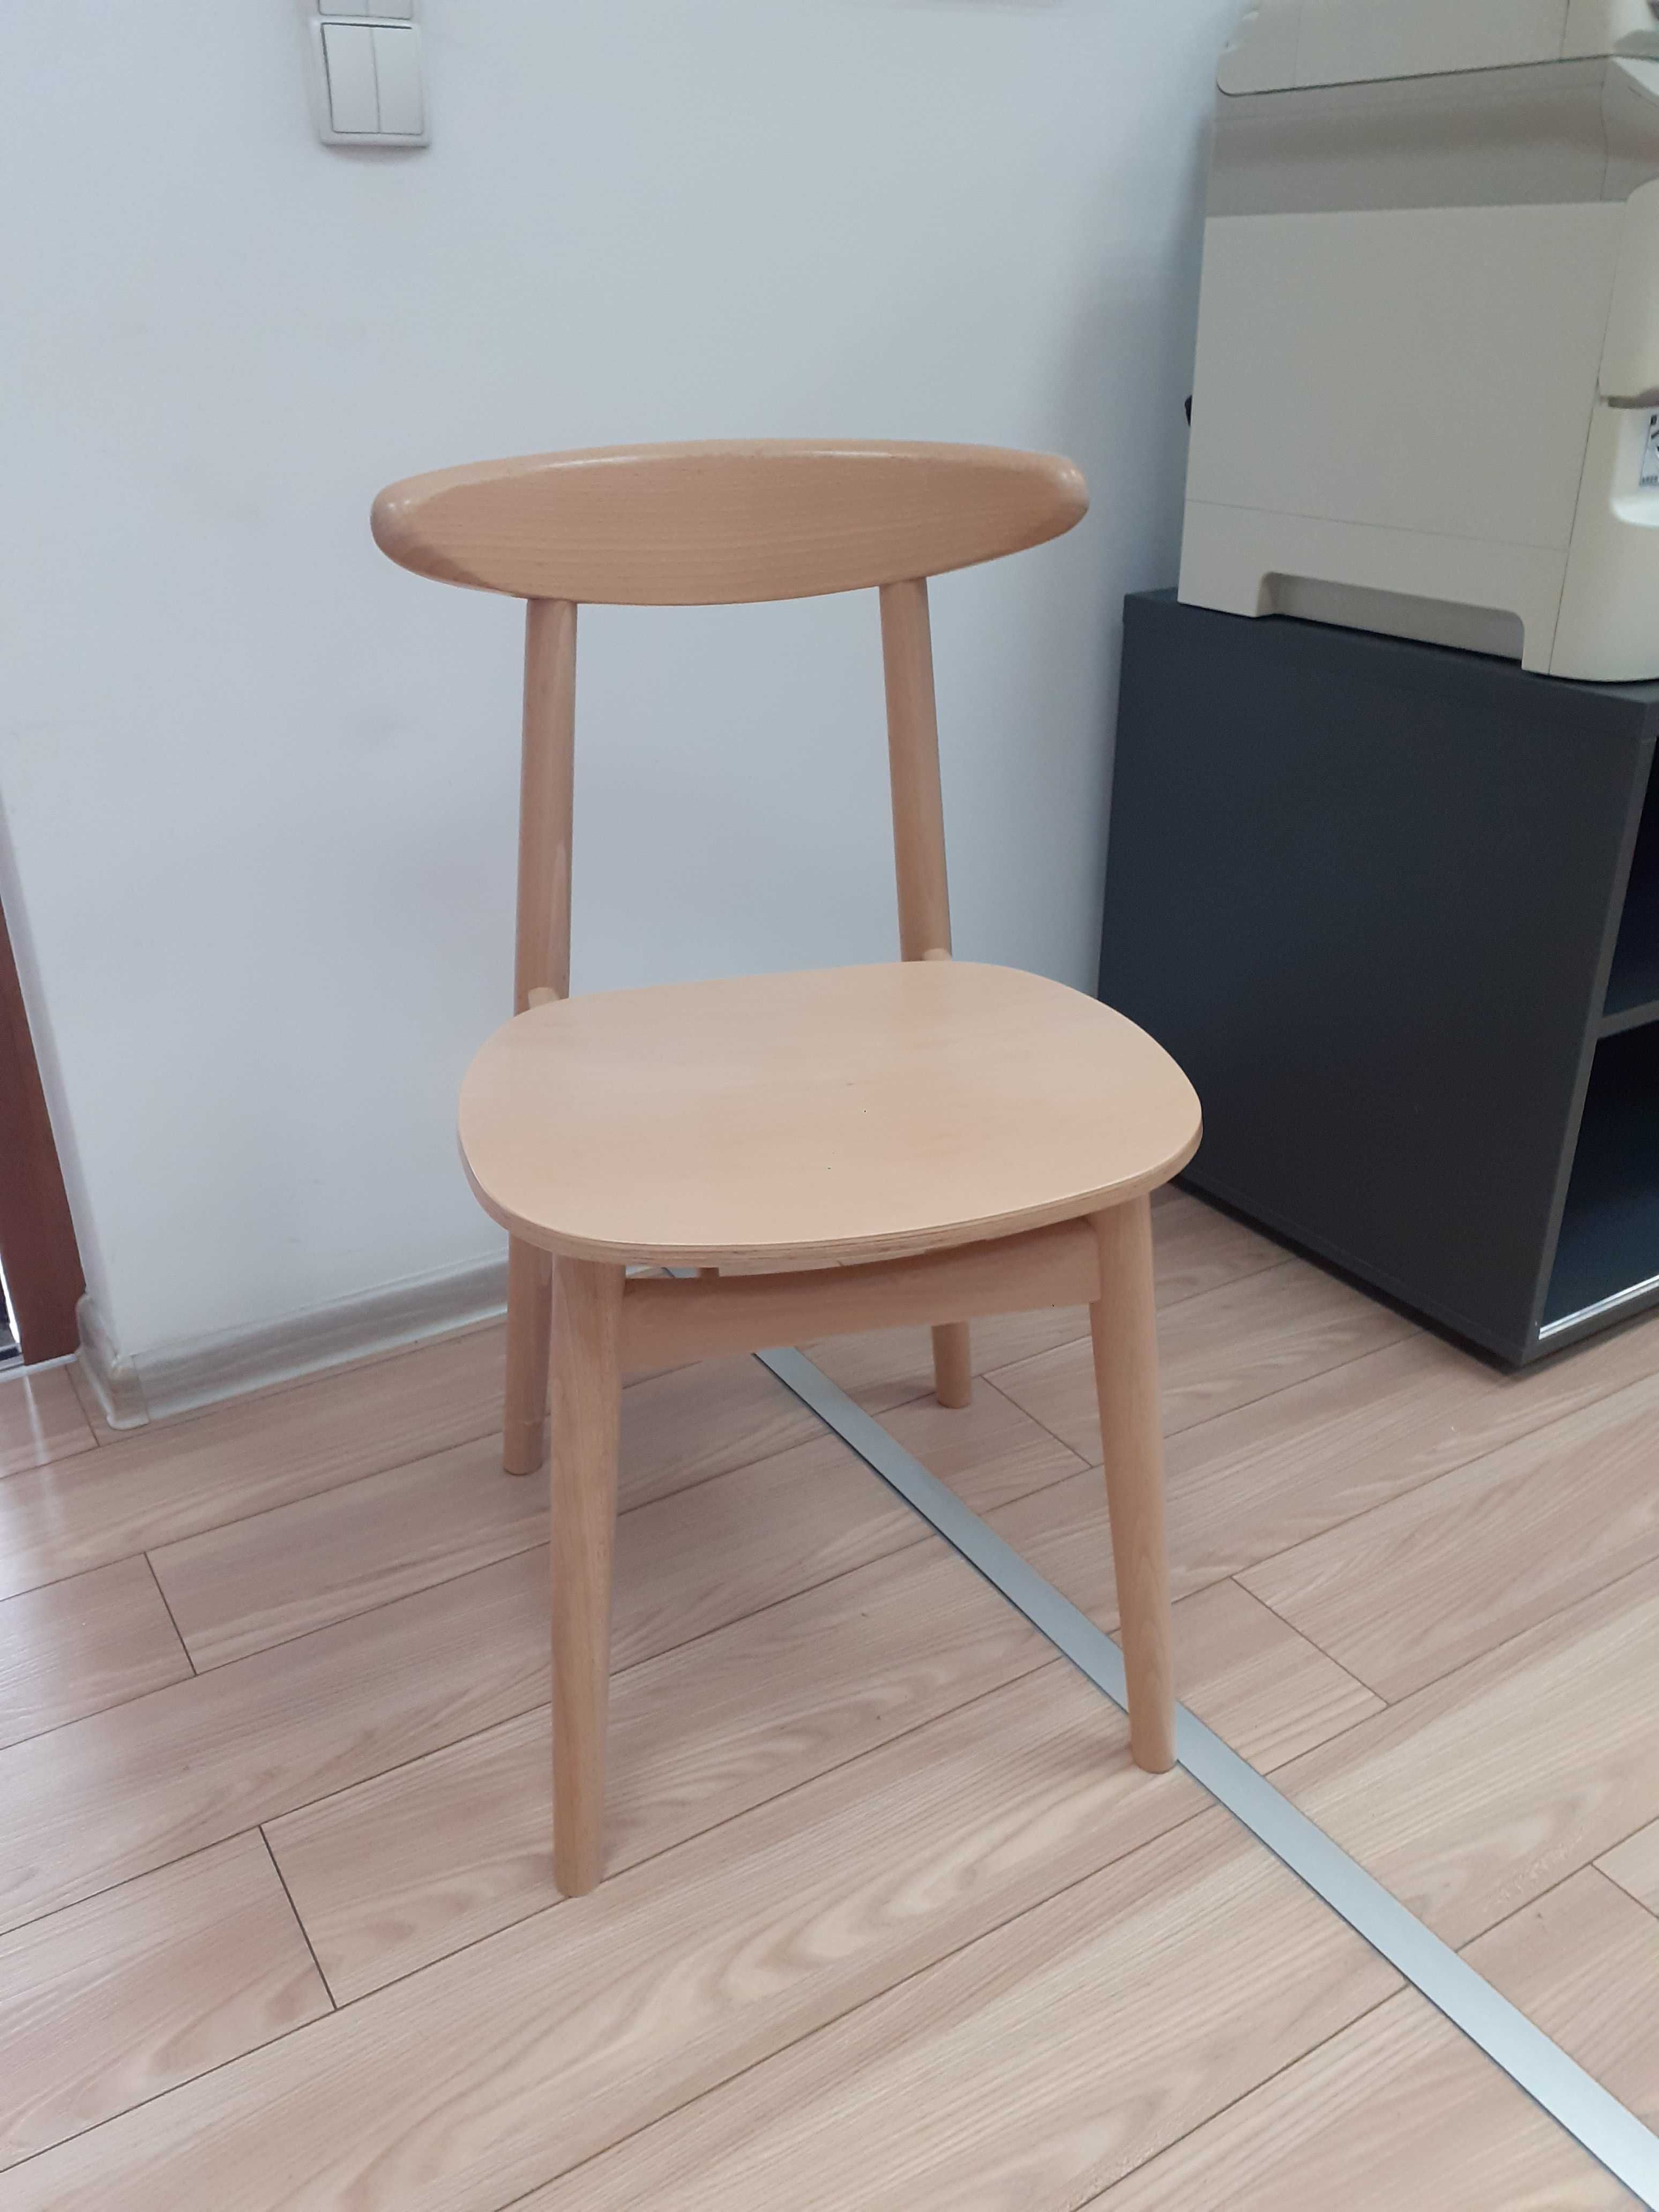 zz634 krzesło drewniane, kolor jasny dąb, masywne